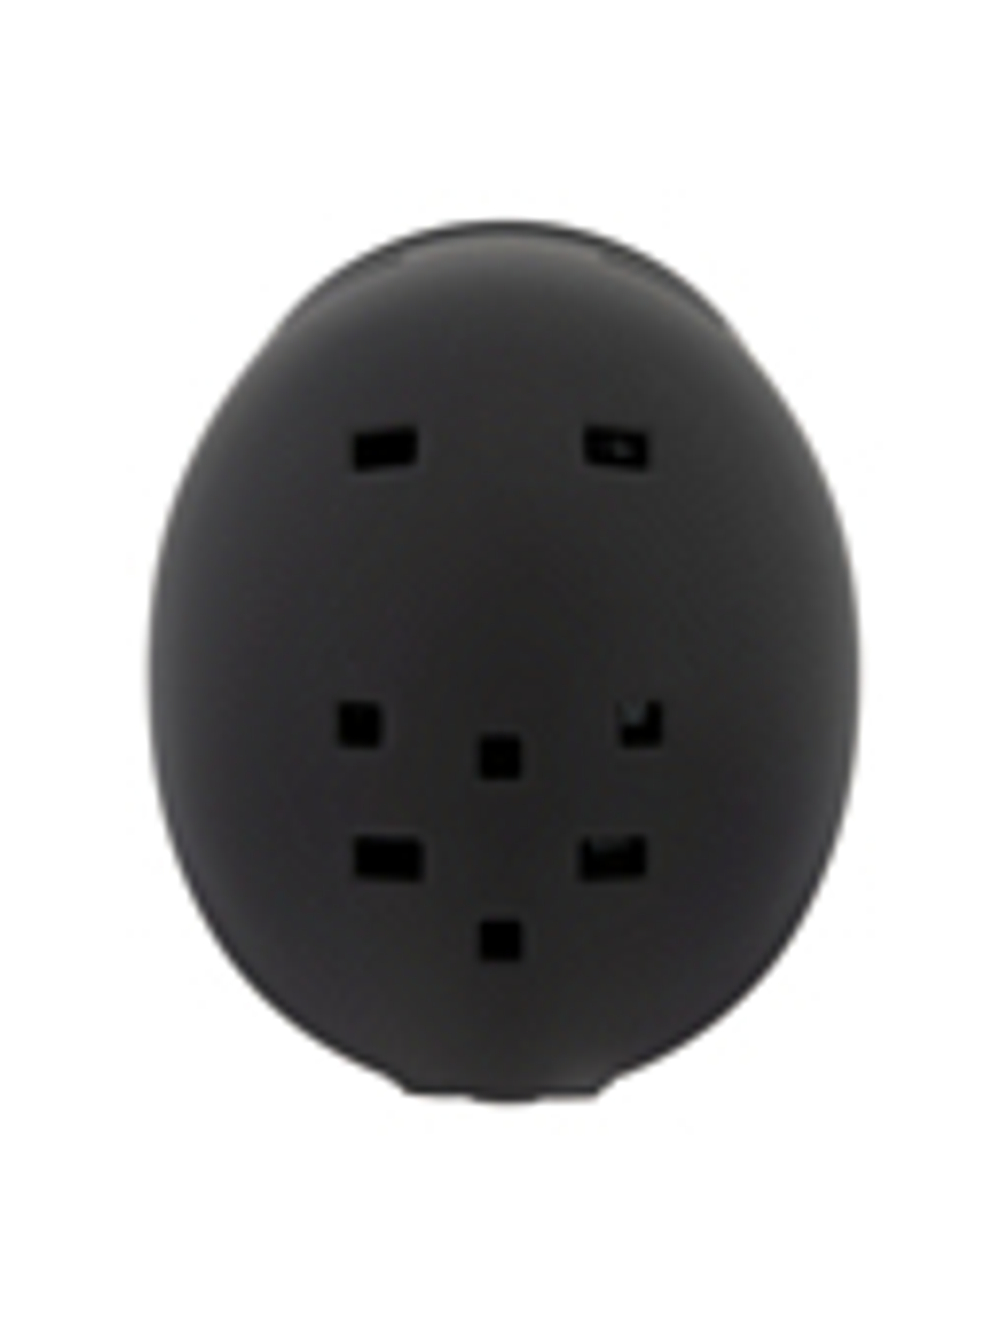 Зимний шлем ProSurf Unicolor Black (см:61)